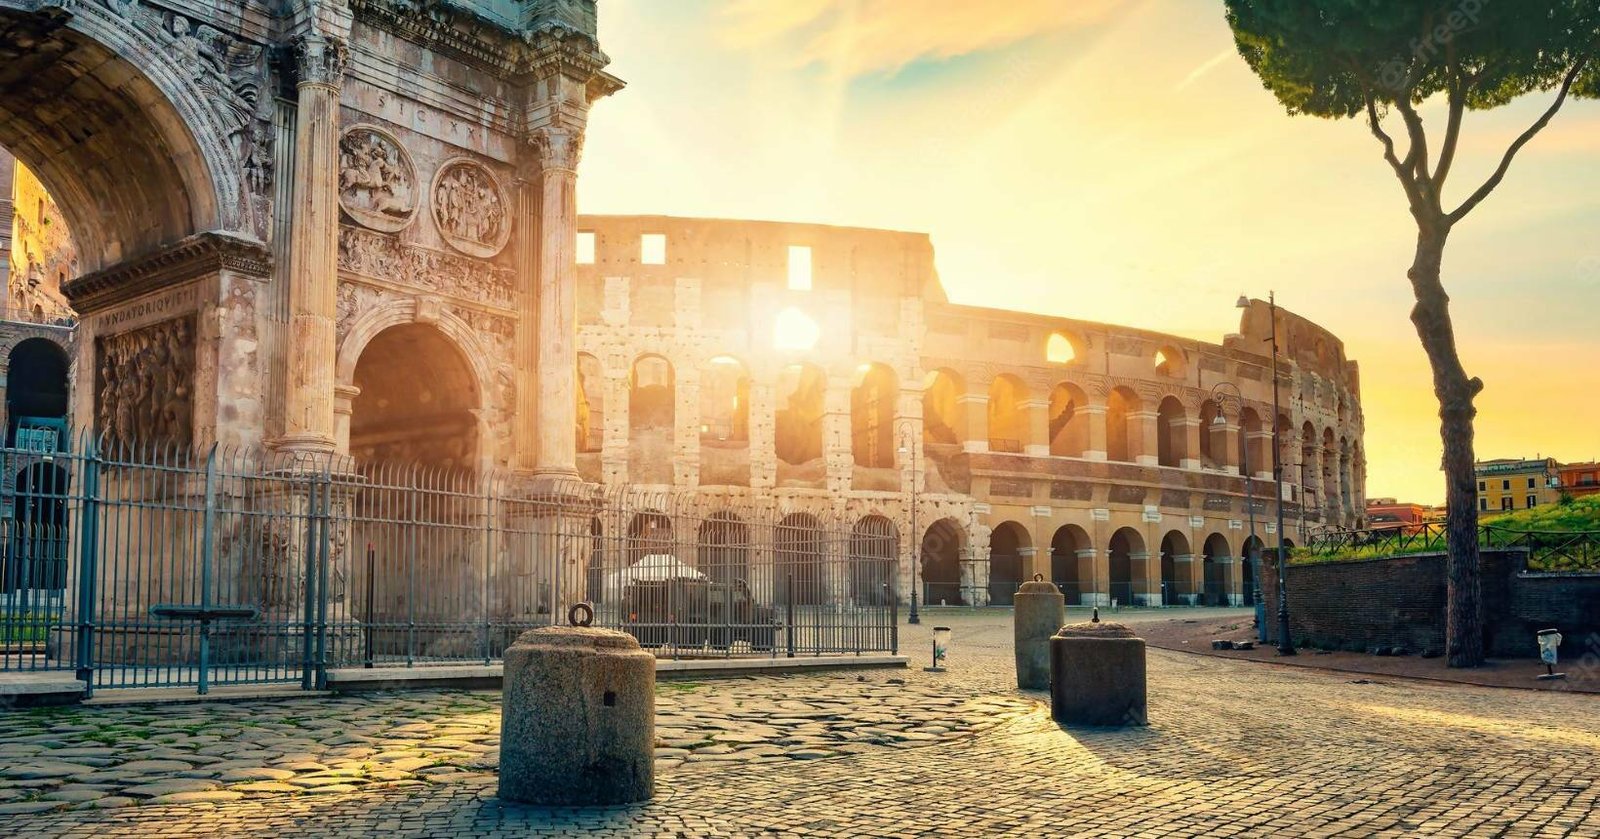 Vista exterior do Coliseu em Roma